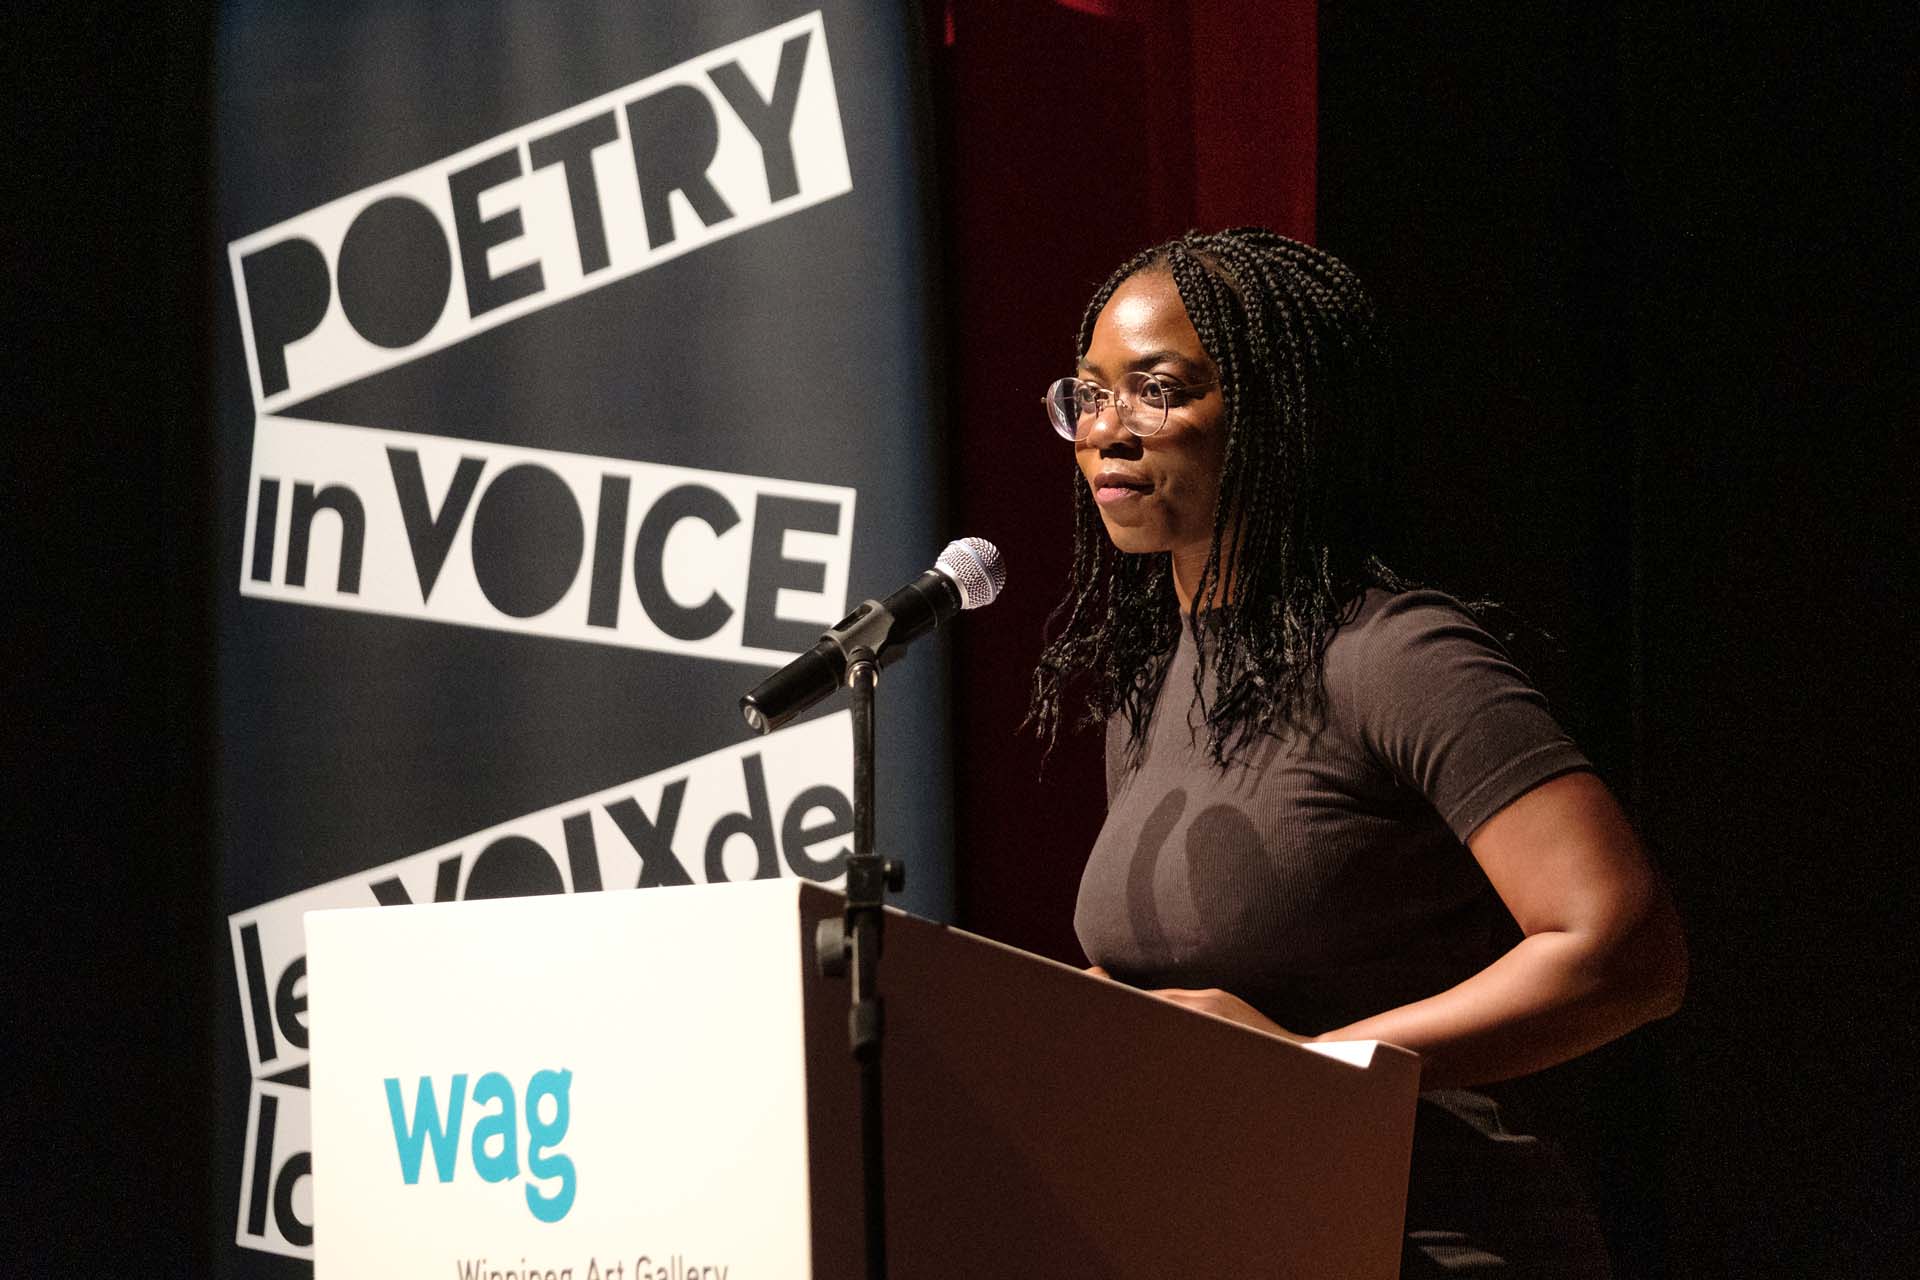 La poète Chimwemwe Undi rend hommage à la poésie de Cecily Nicholson en lisant un extrait du recueil qui lui a mérité le Prix du Gouverneur général 2019 en poésie, <em>Wayside Sang</em>.